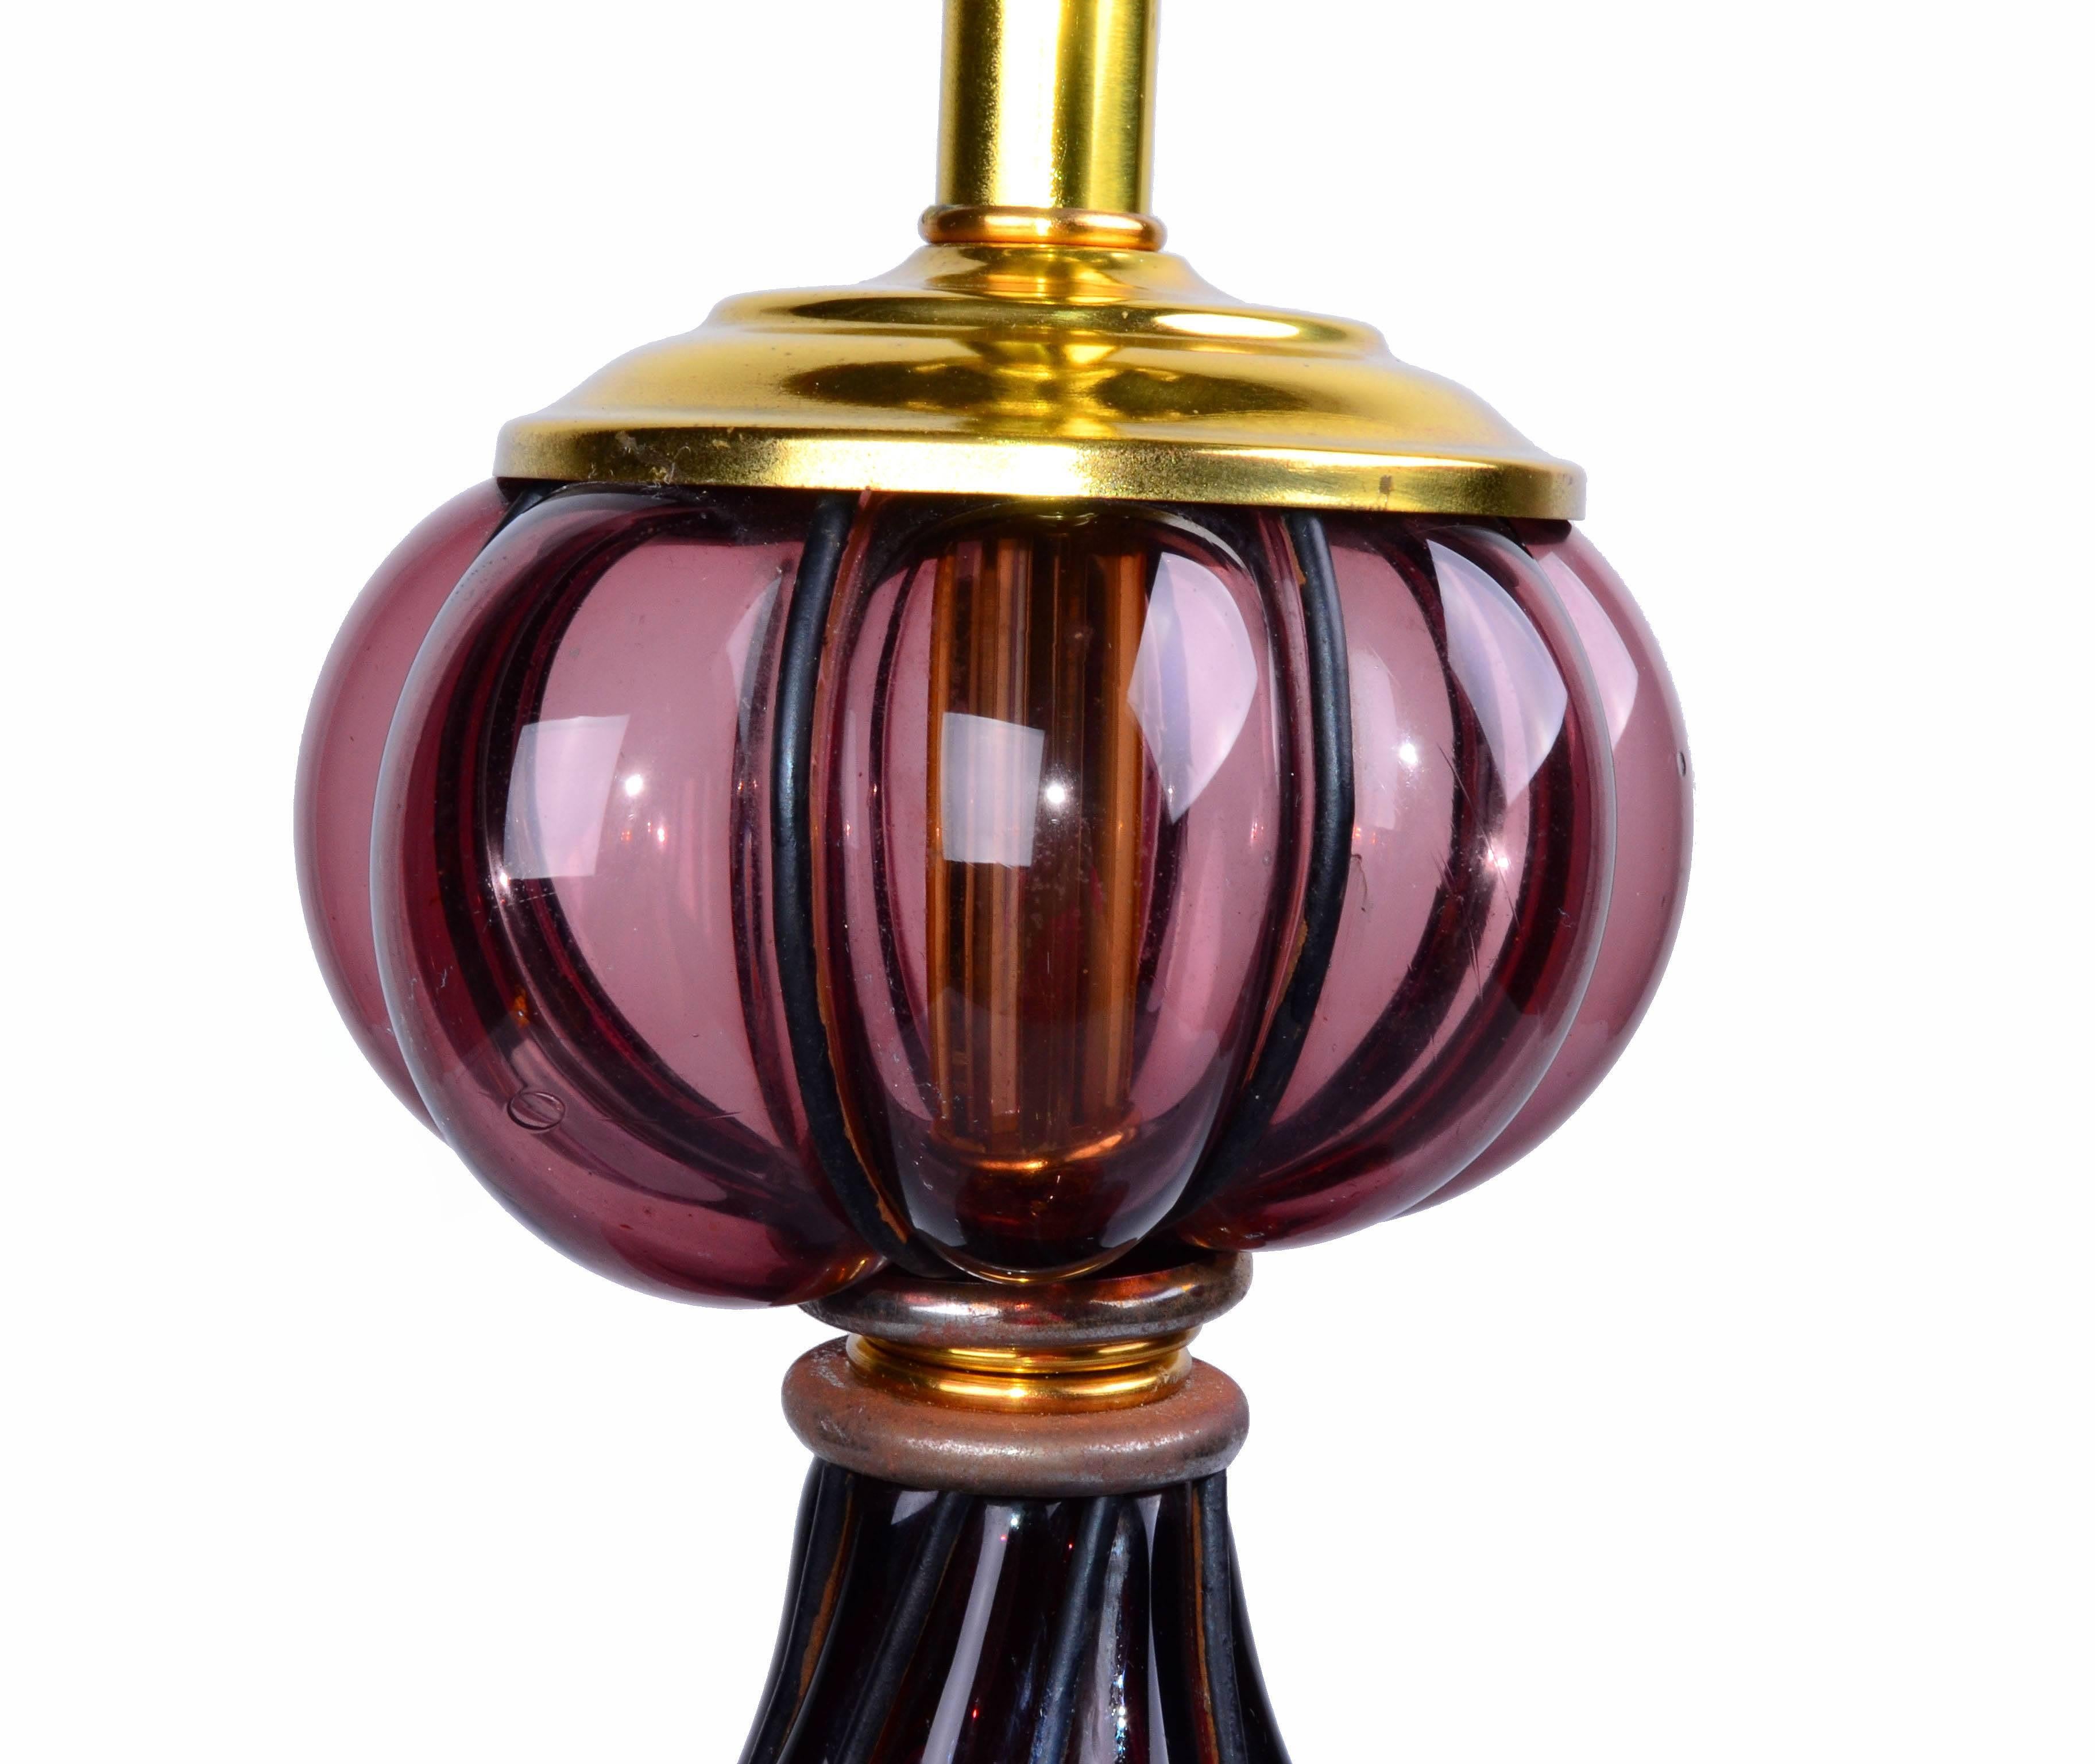 purple table lamp